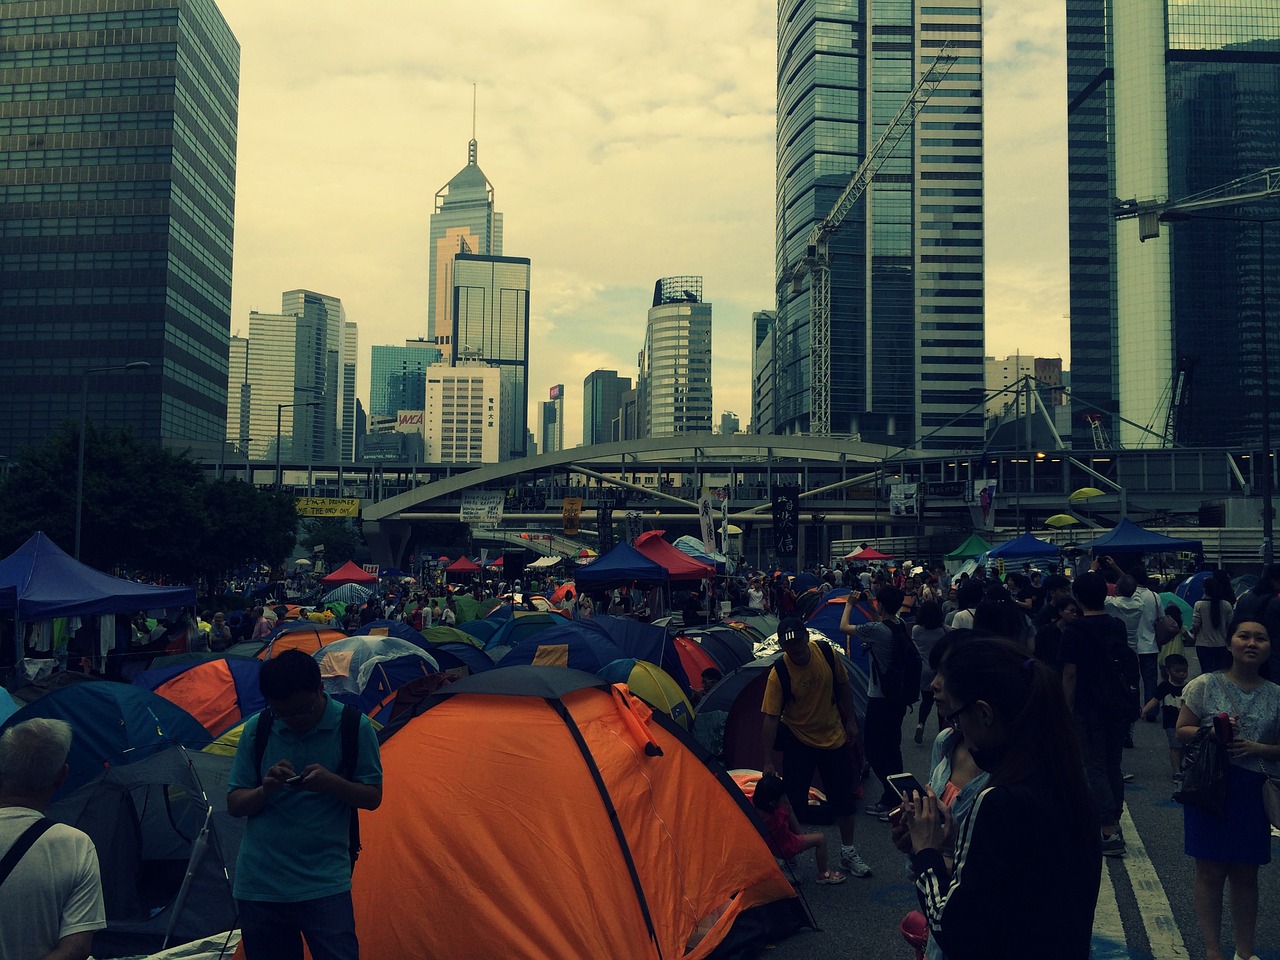 Trader Magazine - Hong Kong Protests Intensify, City ...